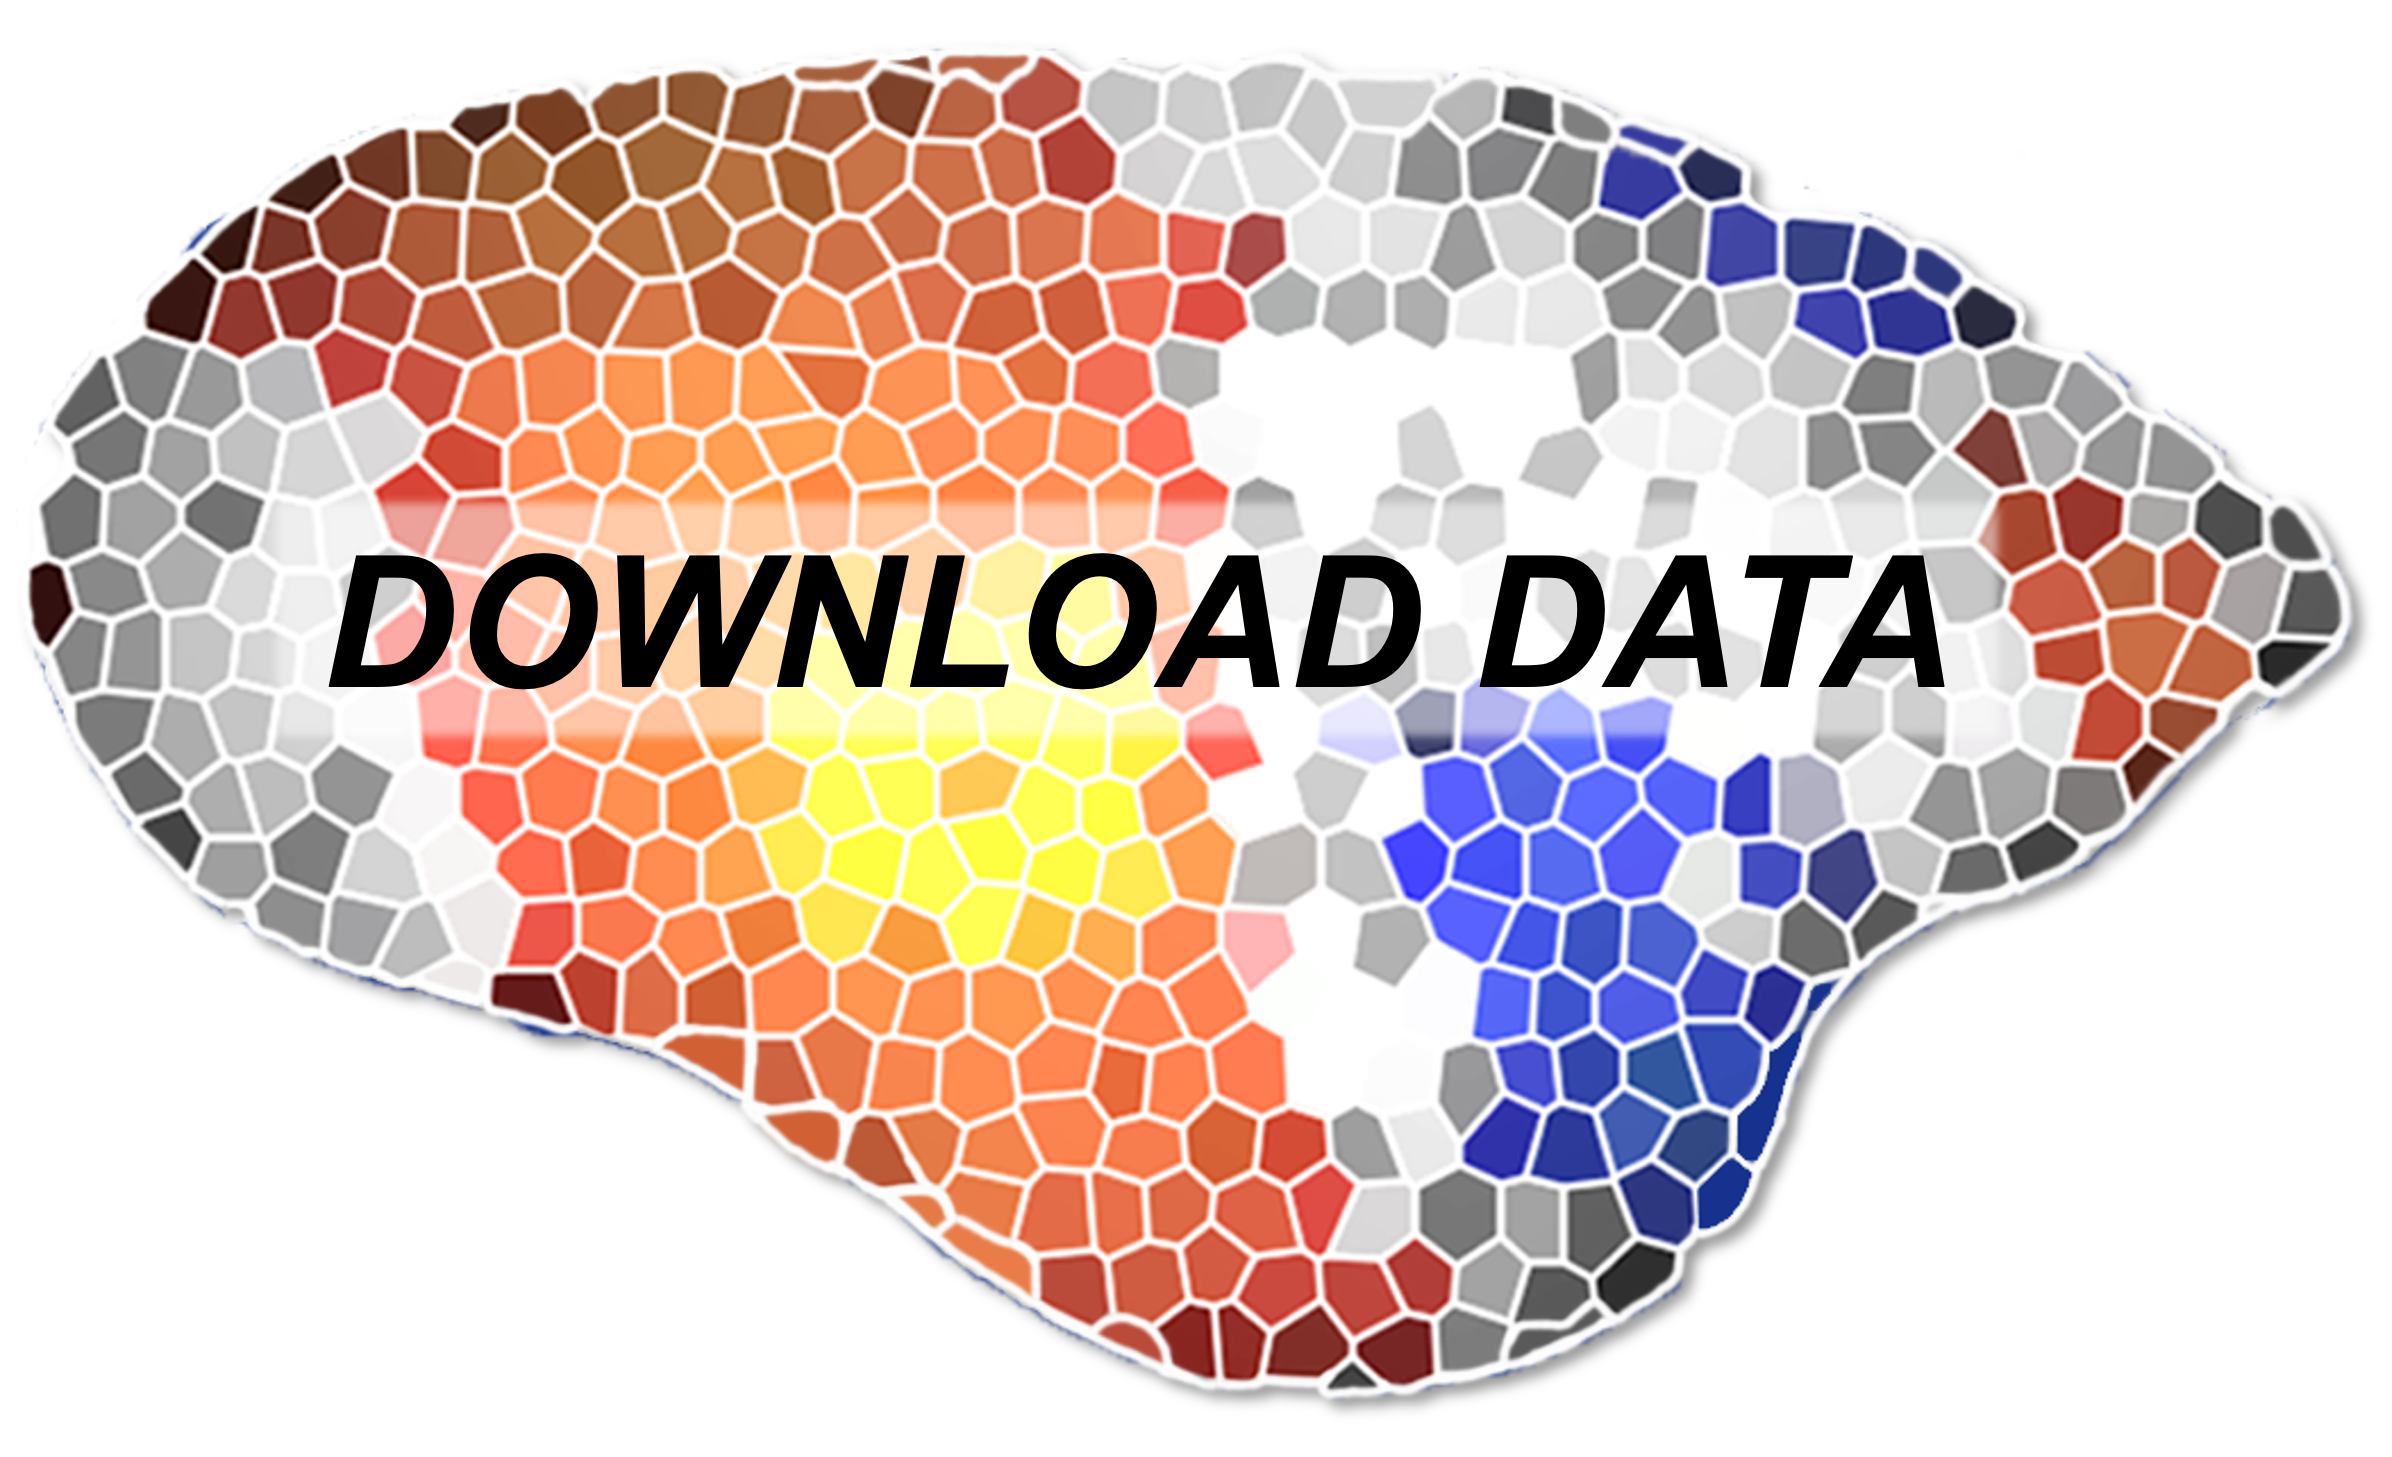 Download datasets